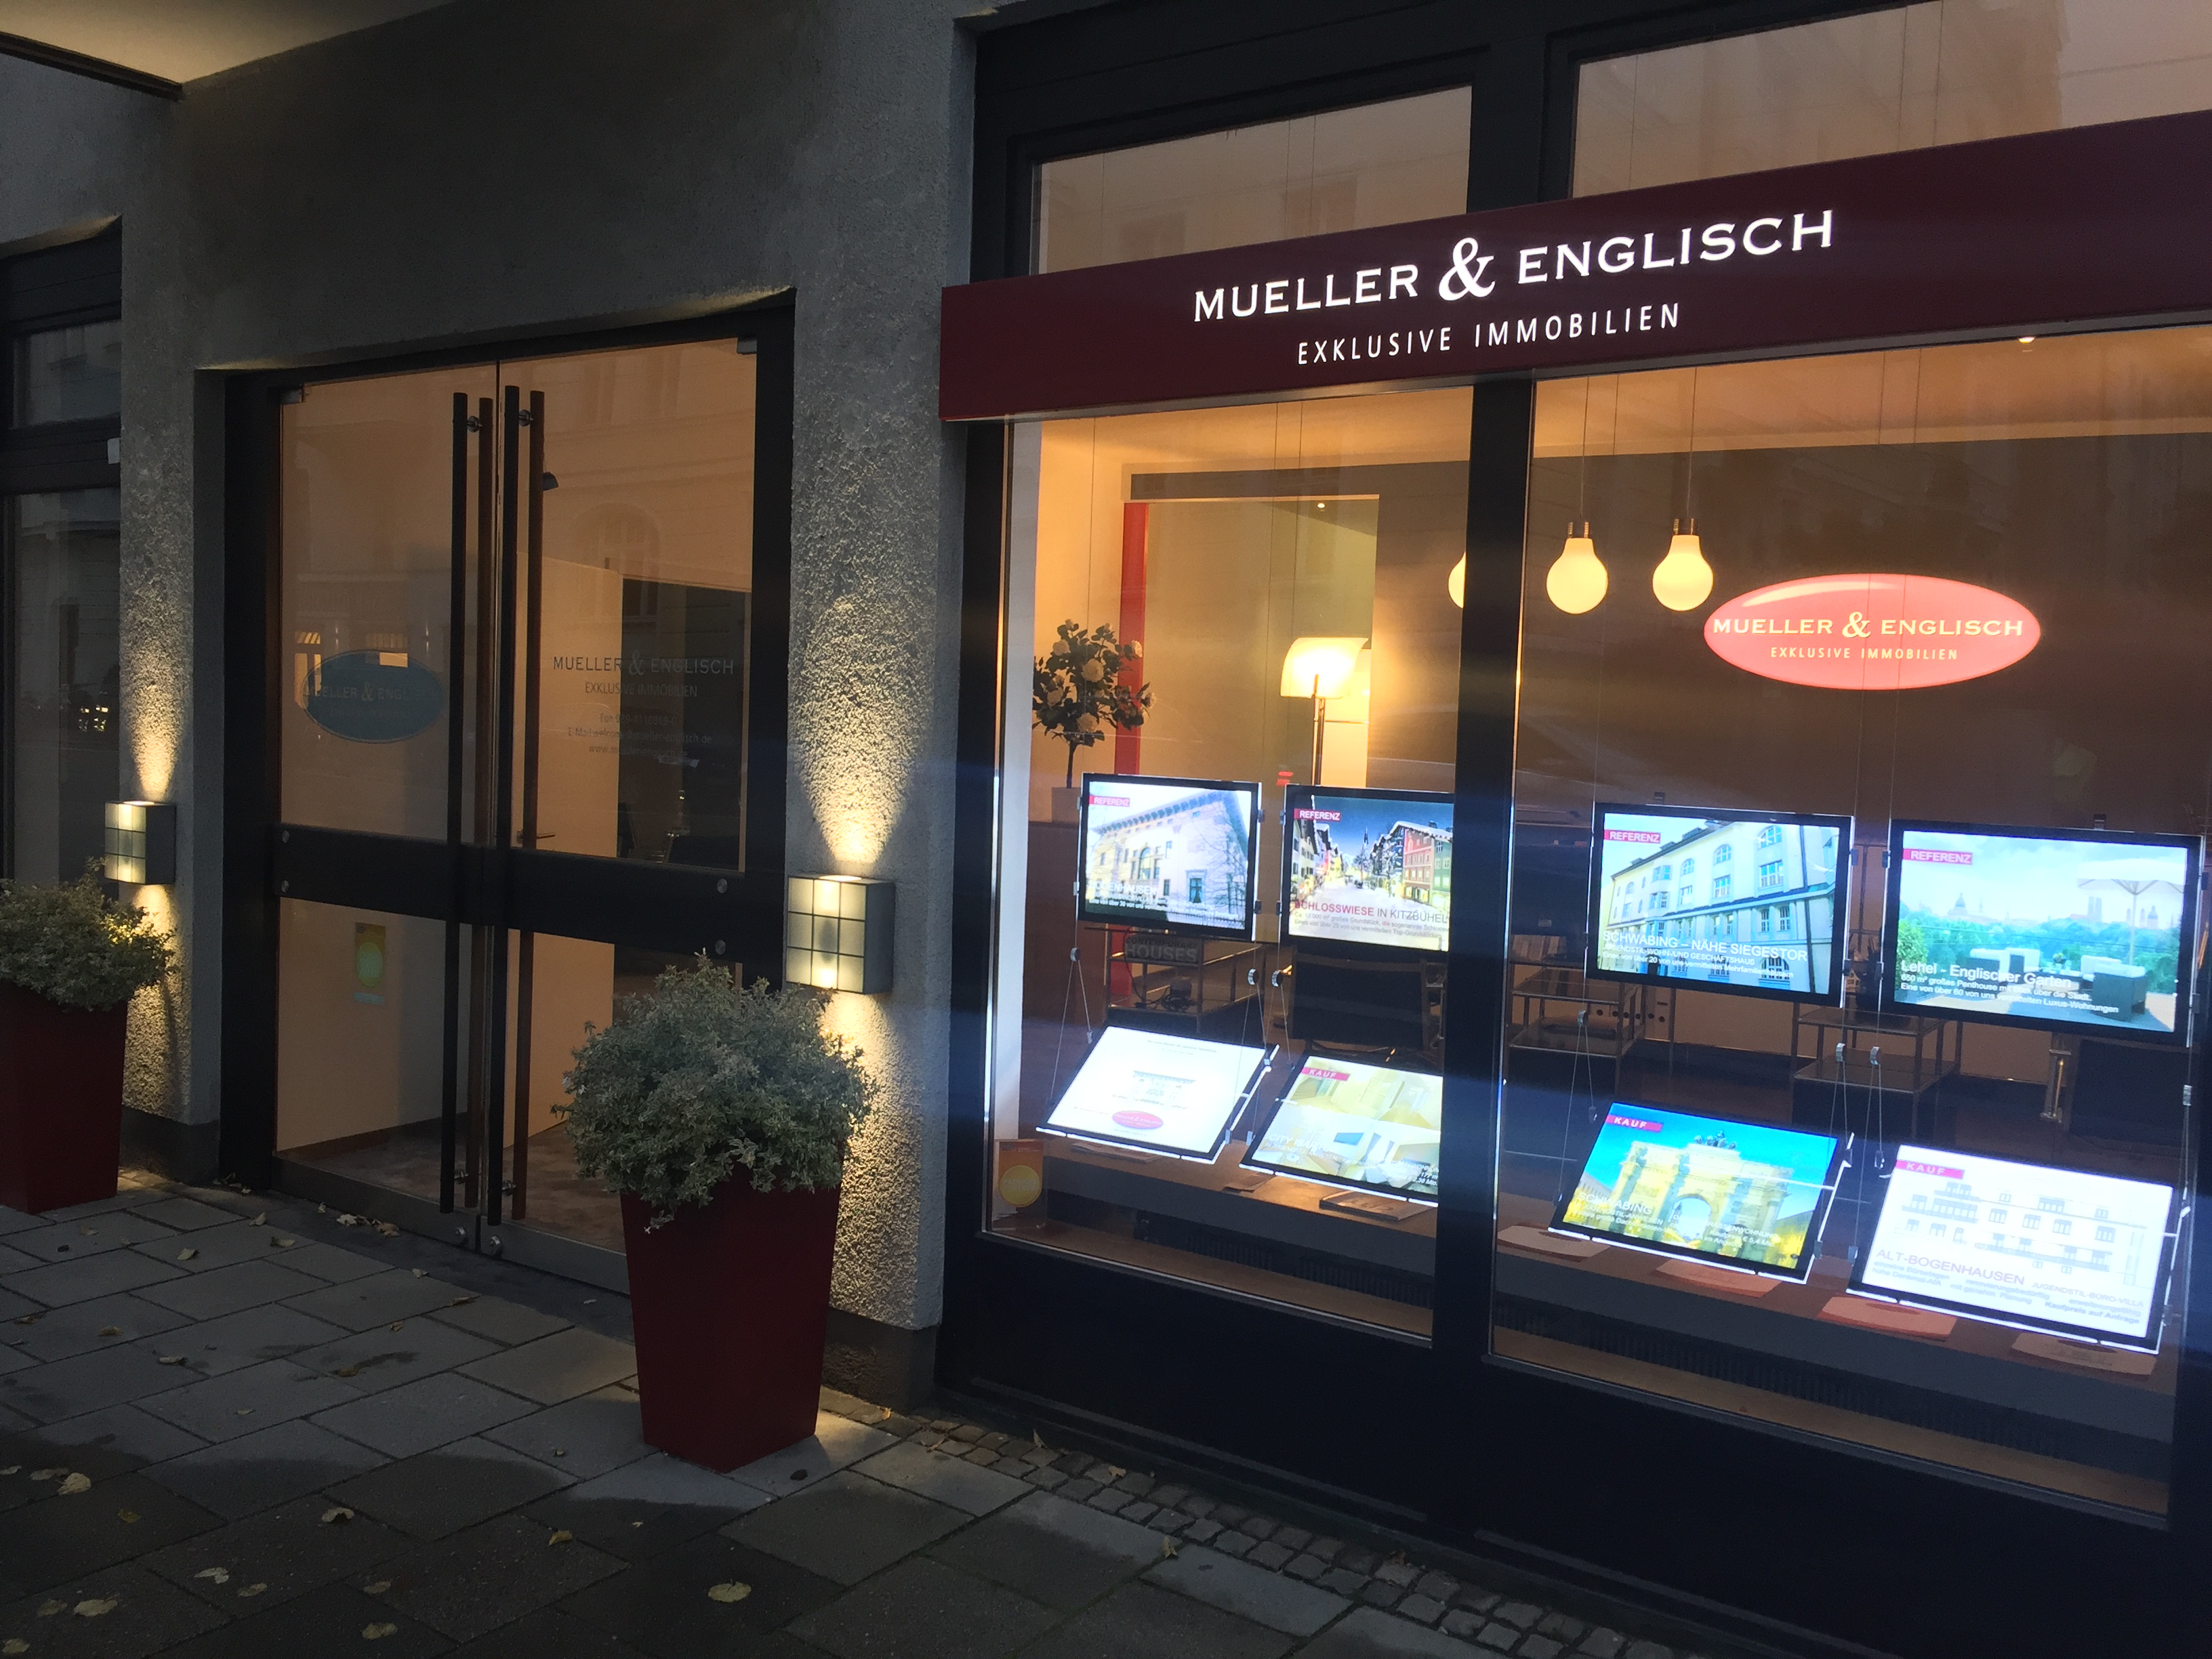 Bild 2 Mueller & Englisch Exklusive Immobilien GmbH in München